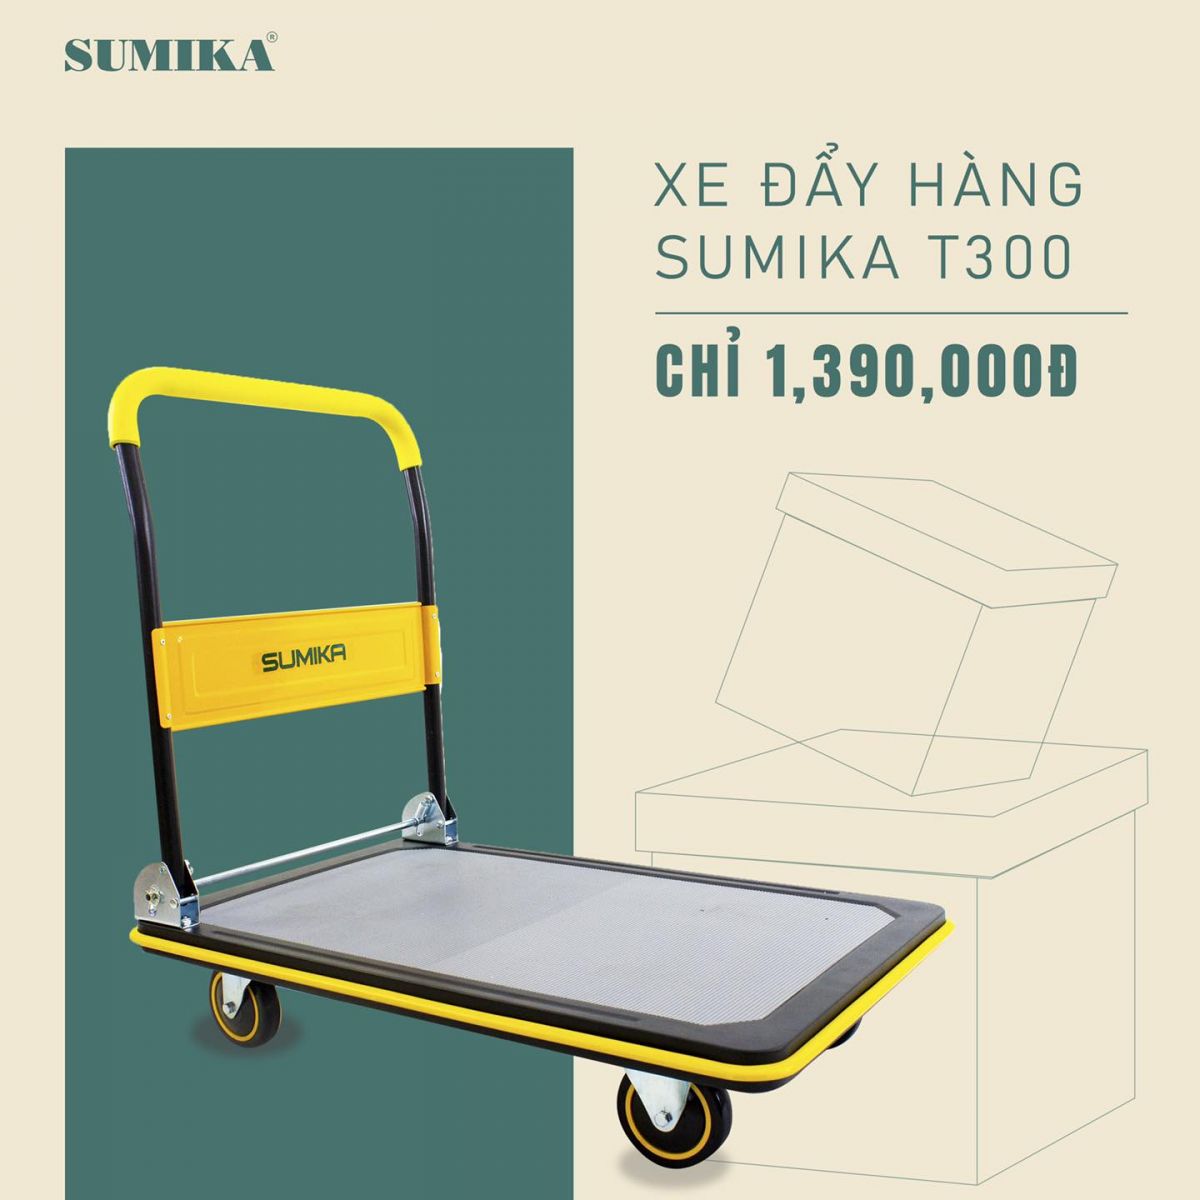 Review dòng xe đẩy hàng Sumika T300 chất lượng Nhật Bản